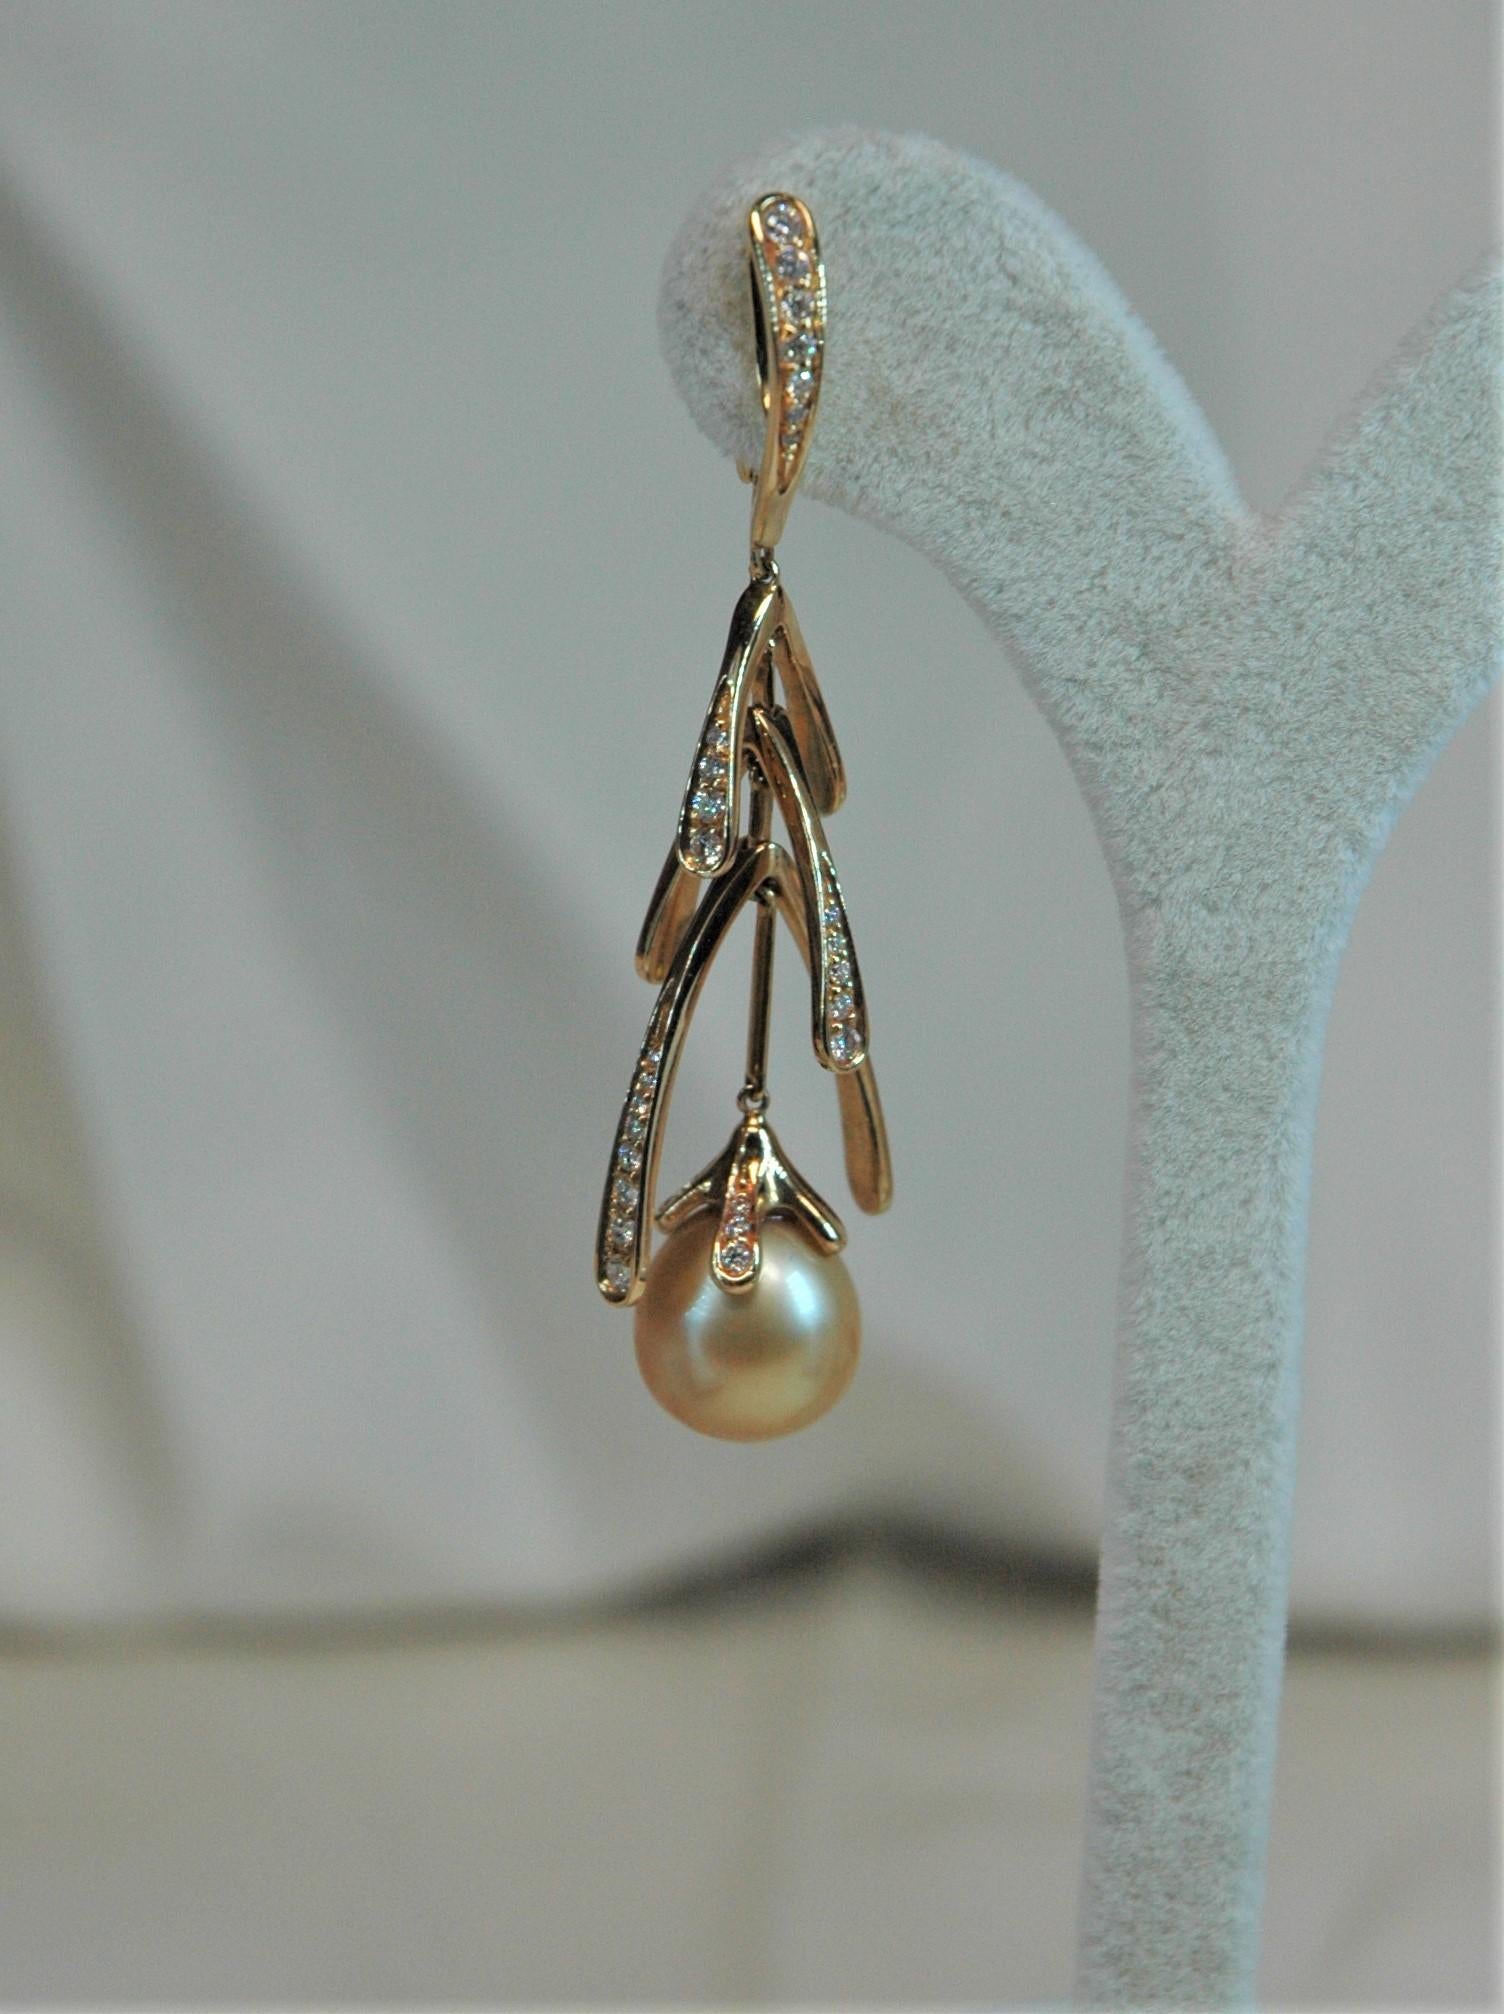 Diese wunderschönen Ohrringe sind aus Gelbgold mit Diamanten und goldenen Perlen gefertigt. Sie sind in ihrer Länge völlig beweglich, was ihnen eine spürbare Leichtigkeit in der Bewegung verleiht. Auch für sie gibt es den perfekten Ring, immer mit